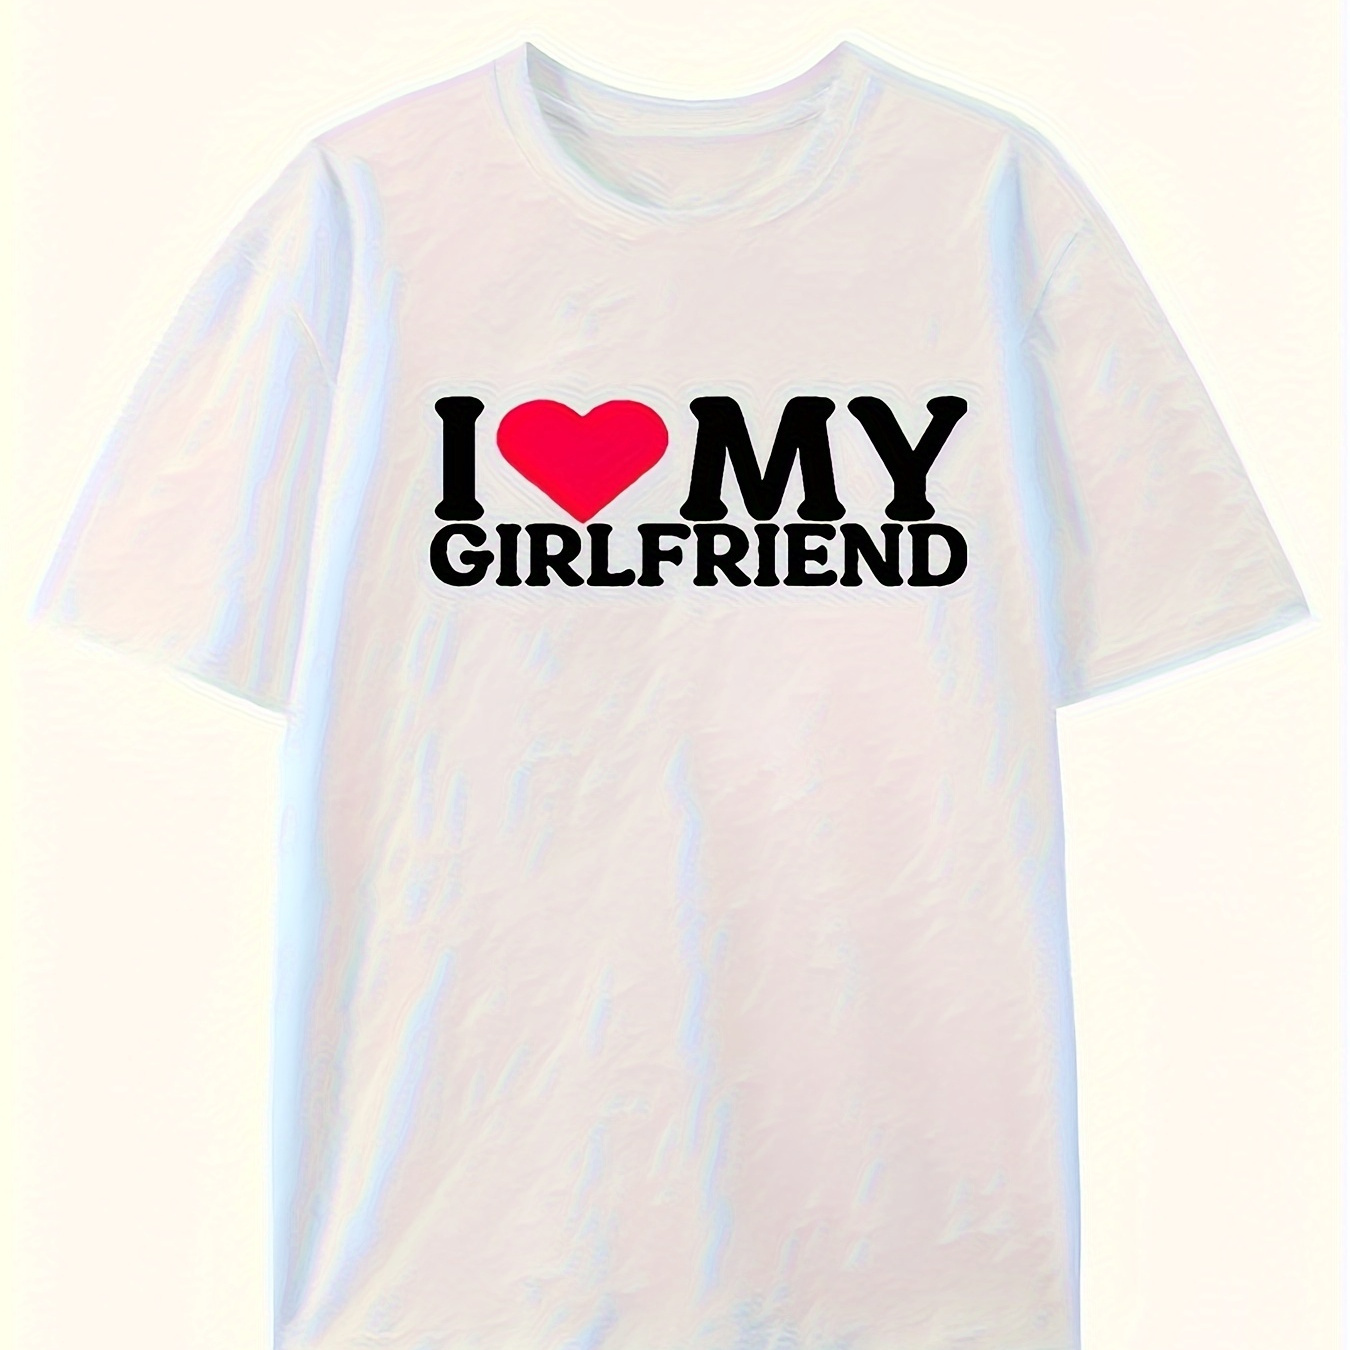 

I Love My Girlfriend/boyfriend Print Men's Short Sleeve Pure Cotton T-shirt Summer T-shirt Top